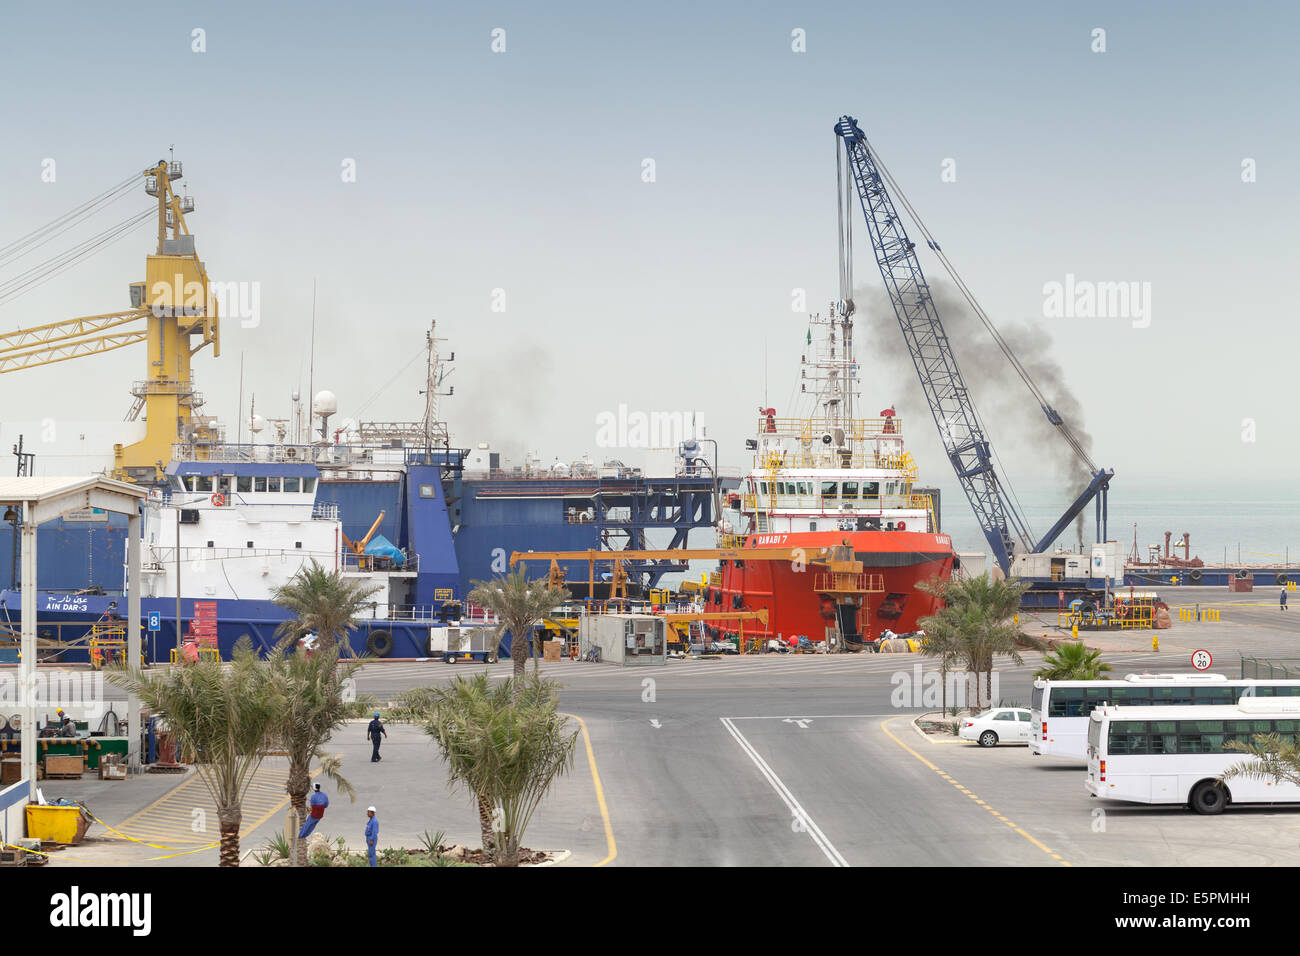 RAS TANURA, Arabia Saudita - 13 Maggio 2014: vista sul porto con navi ormeggiate e lavoratori, Arabia Saudita Foto Stock